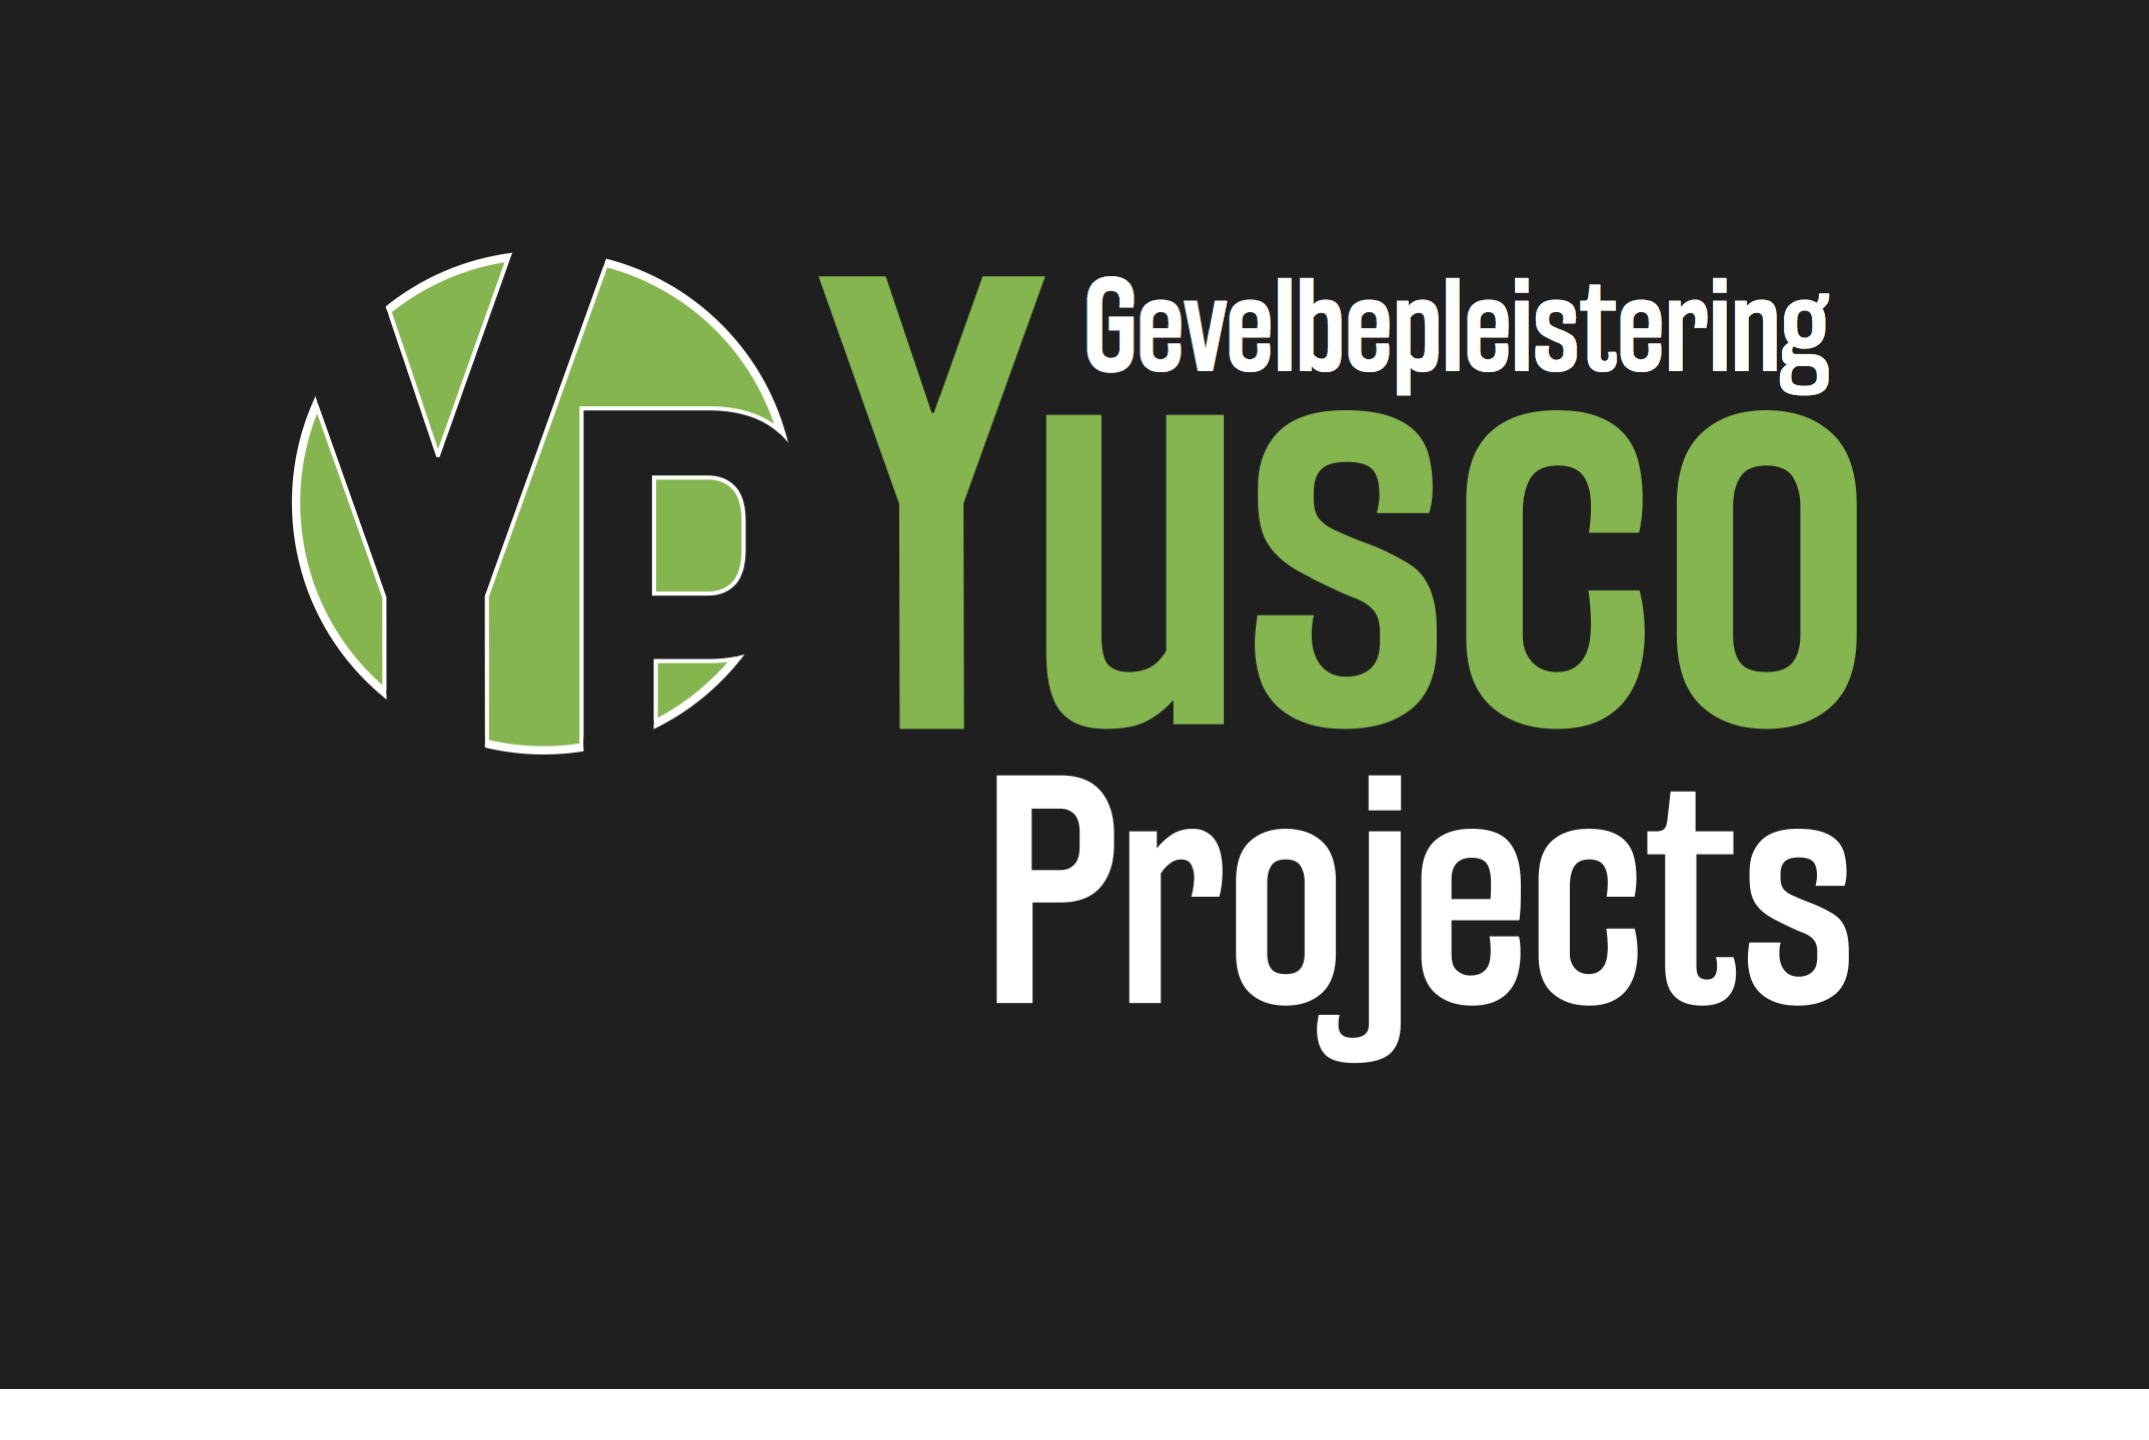 gevelrenovateurs Merelbeke Yusco Projects Gevelbepleistering